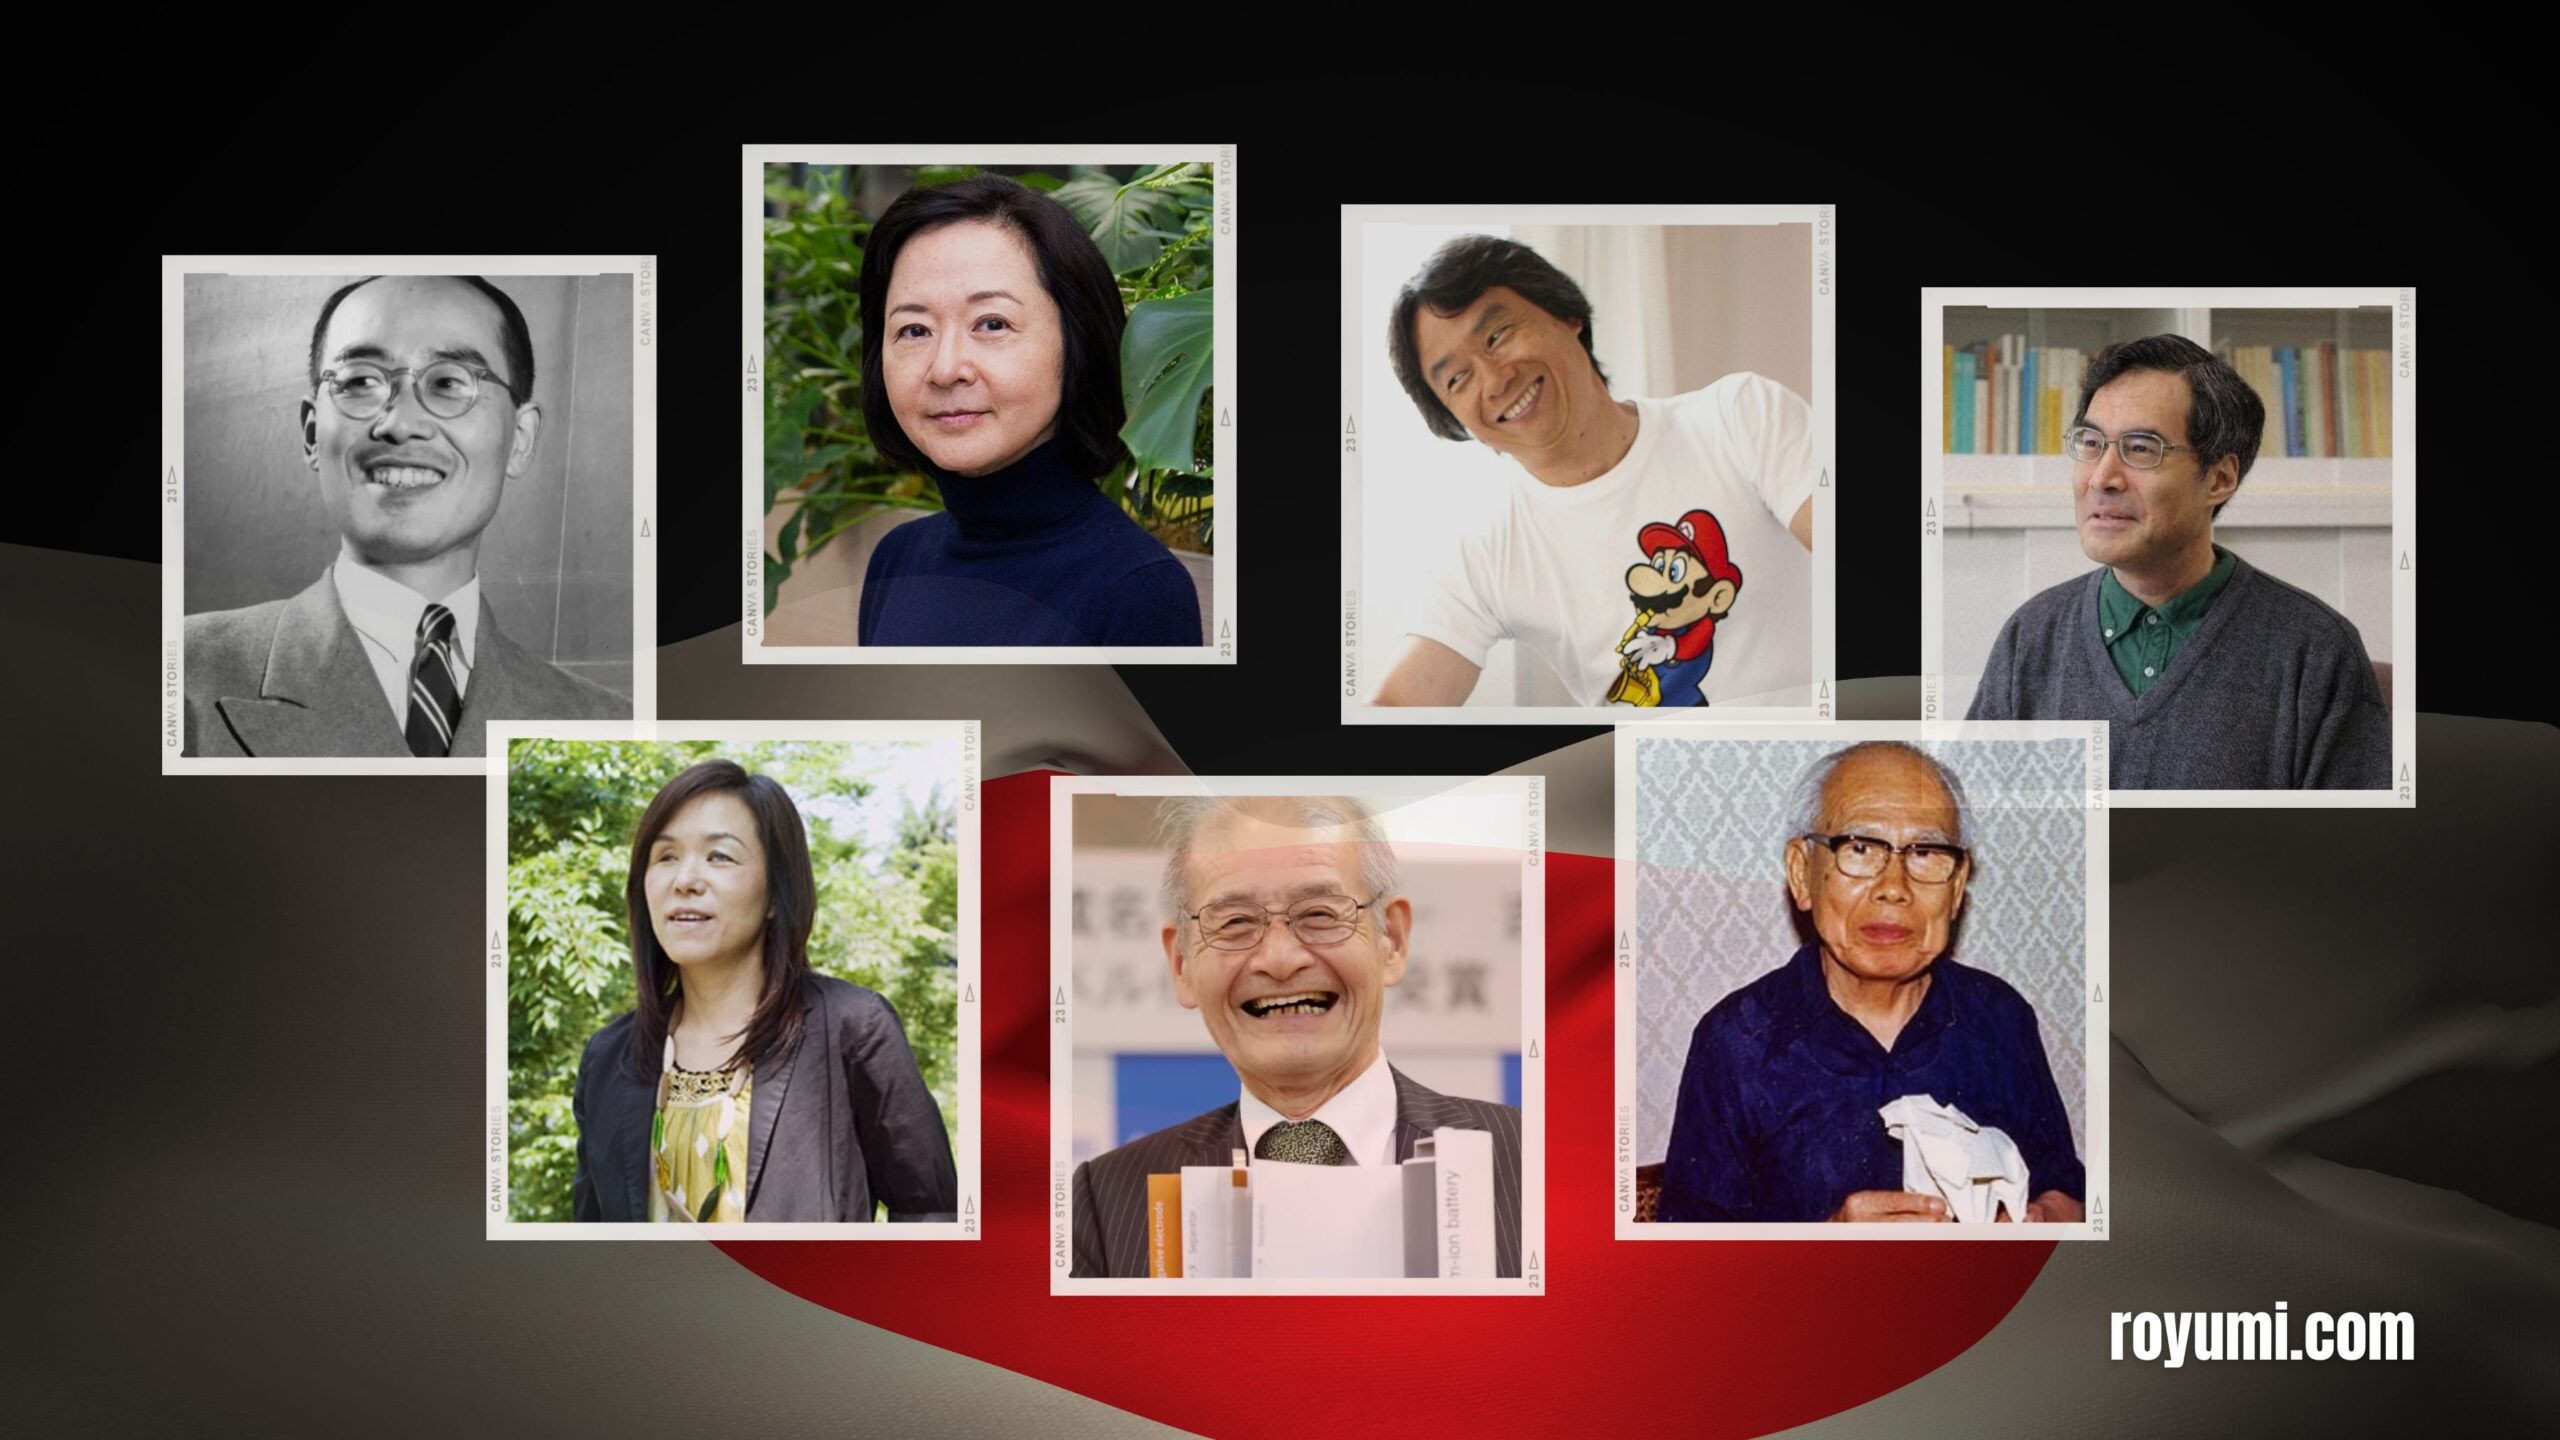 無限の輝き: 近代史に足跡を残した日本の天才たちを紹介